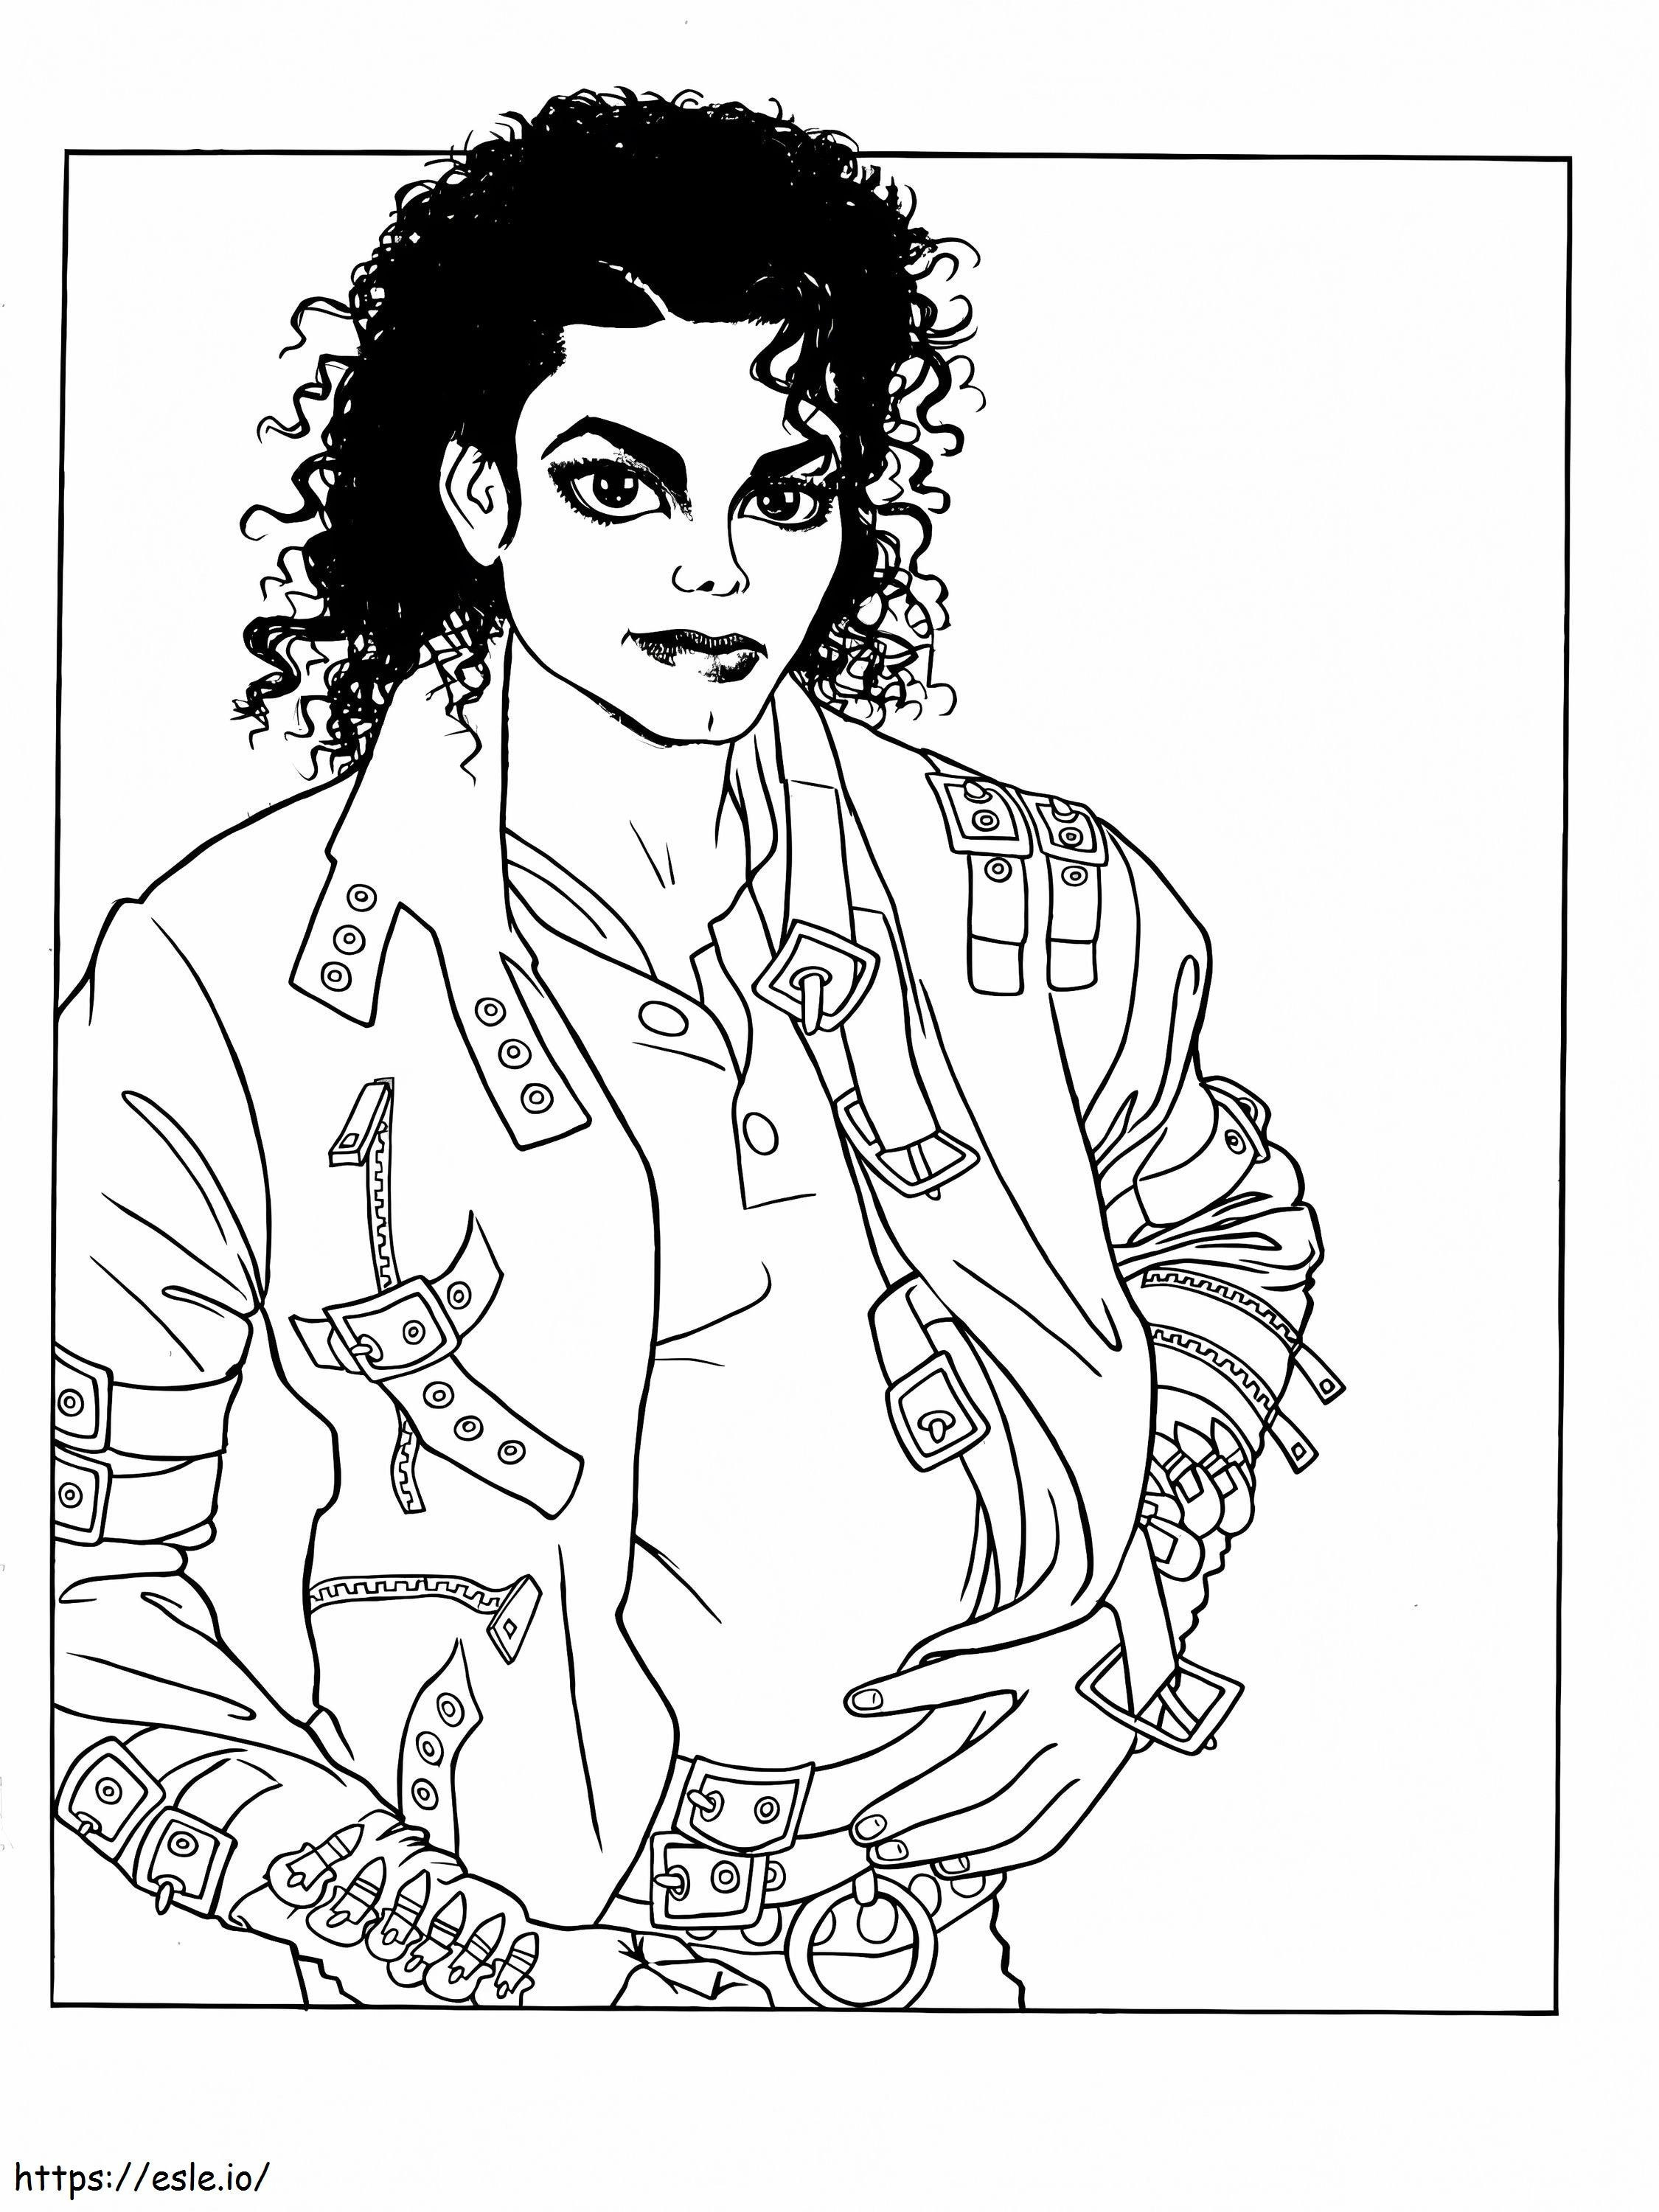 Betreten Sie die magische Welt von Michael Jackson ausmalbilder